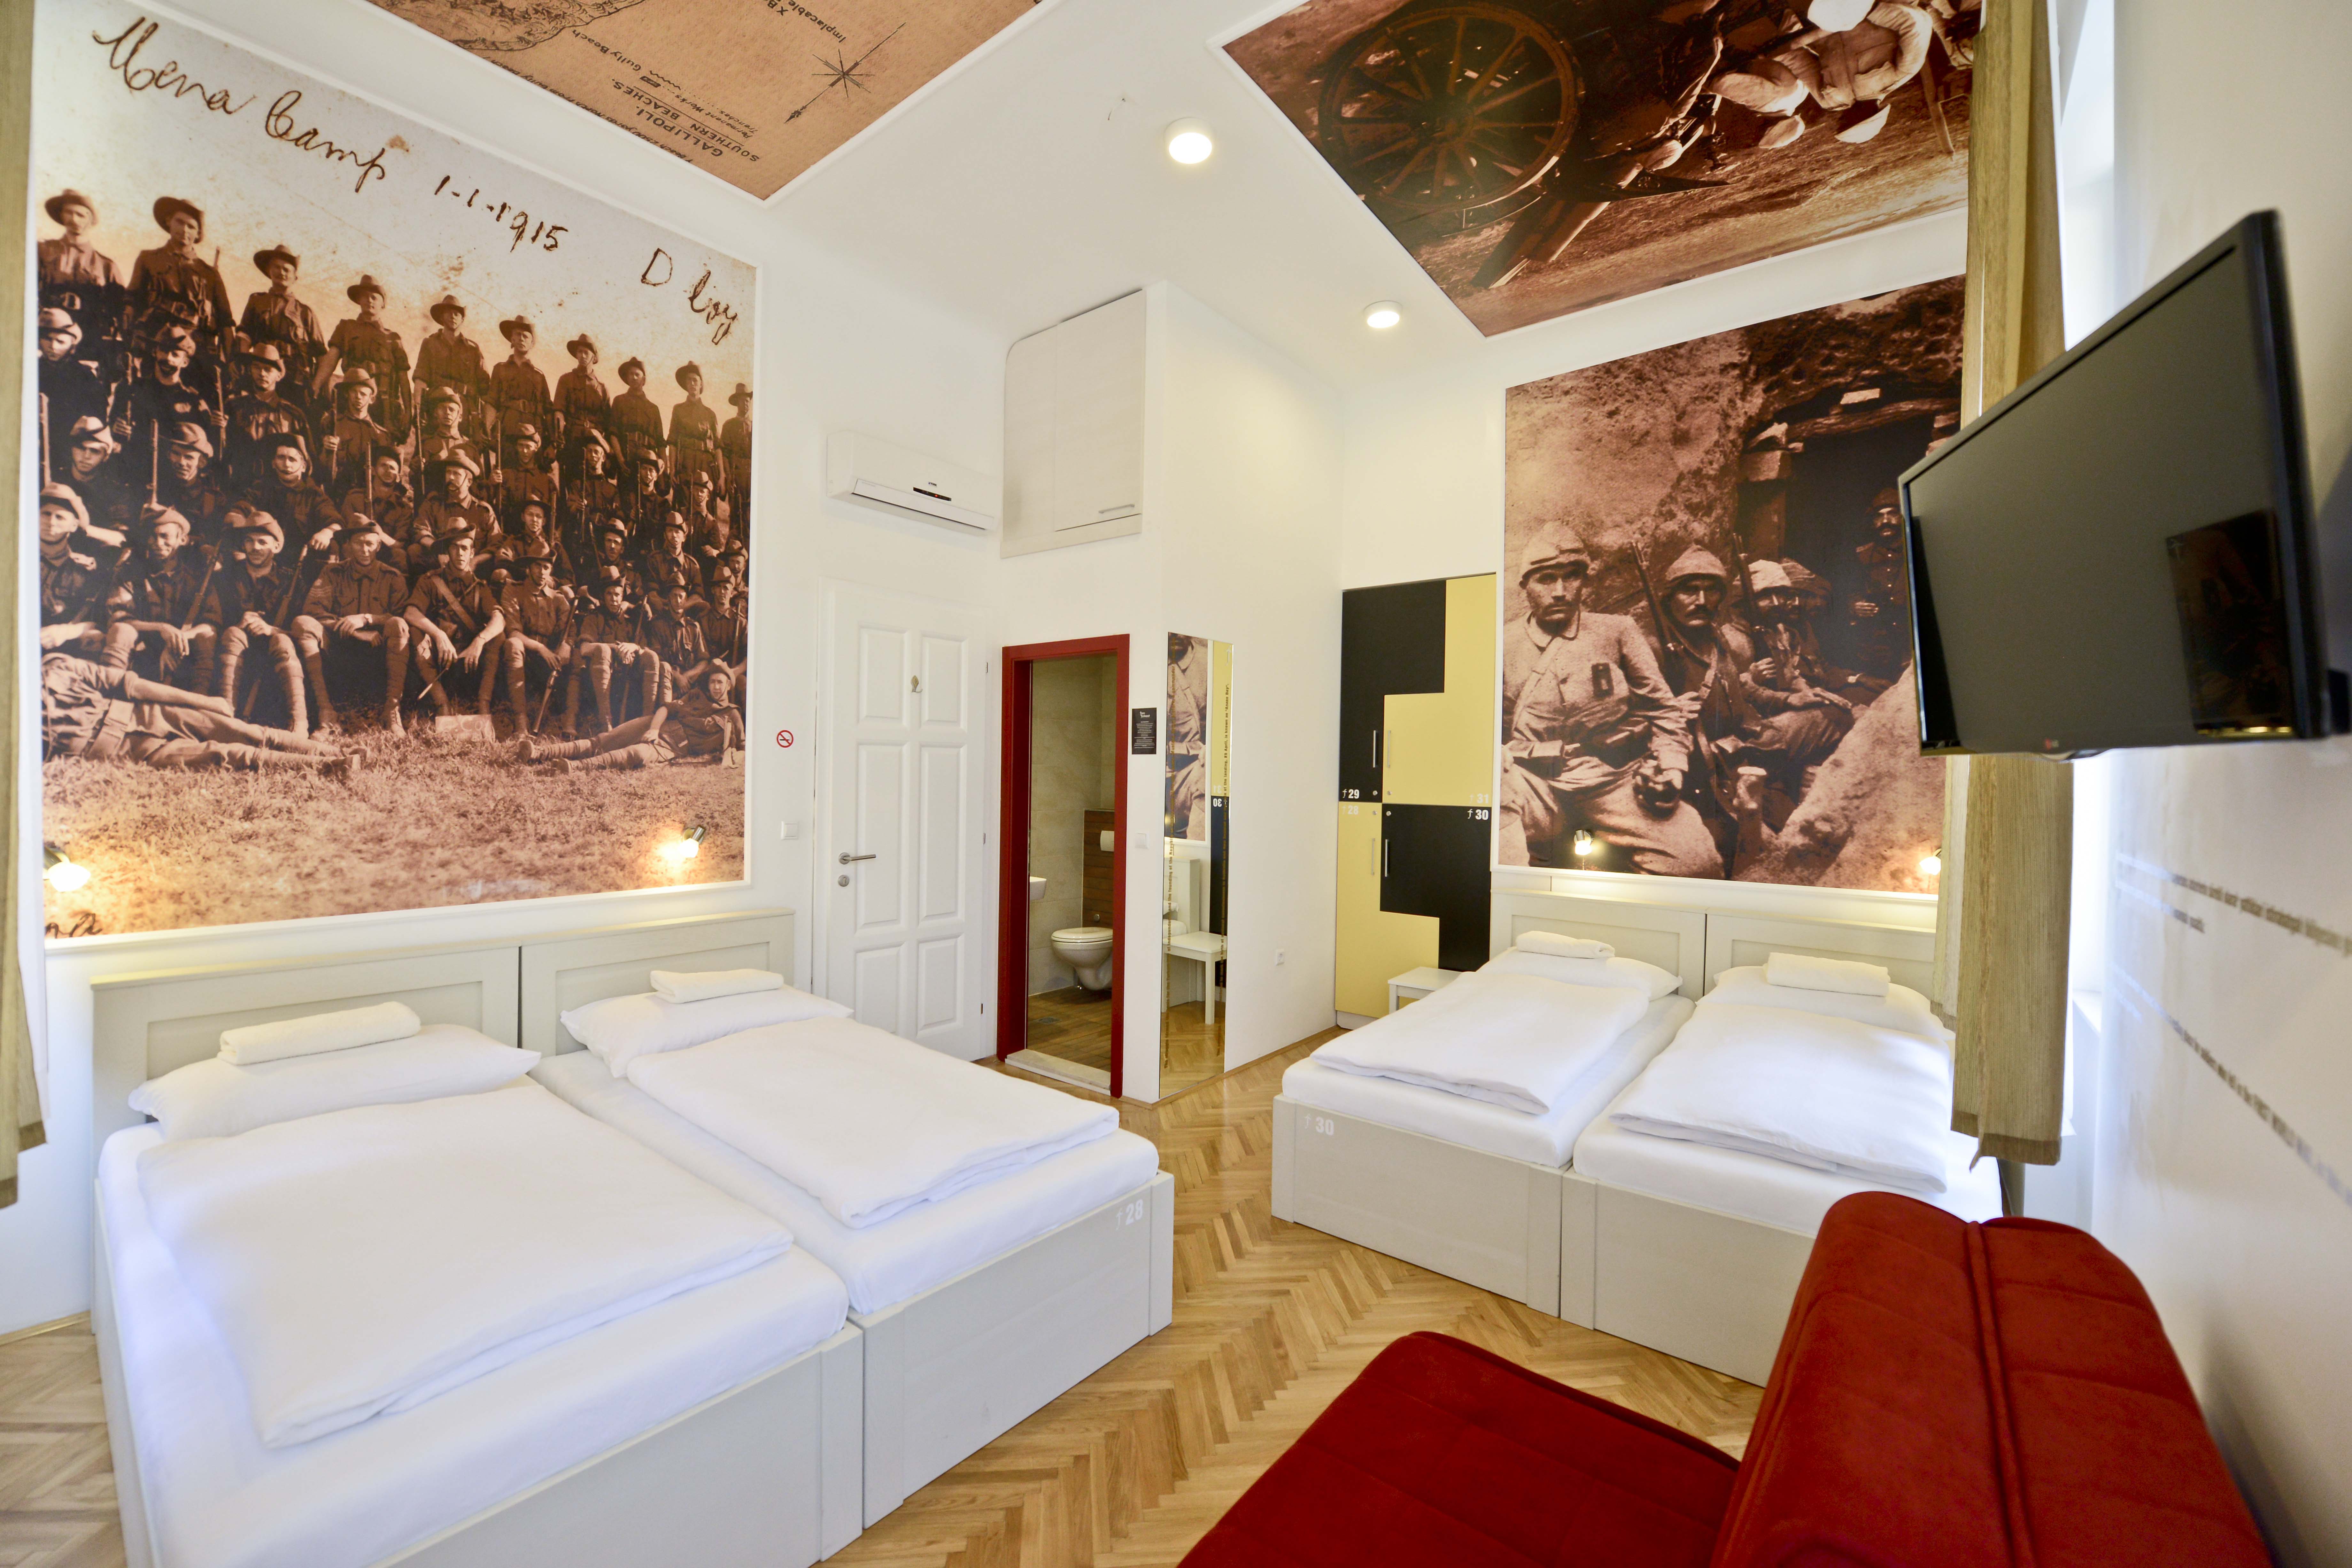 Best Luxury Hostels Of Europe